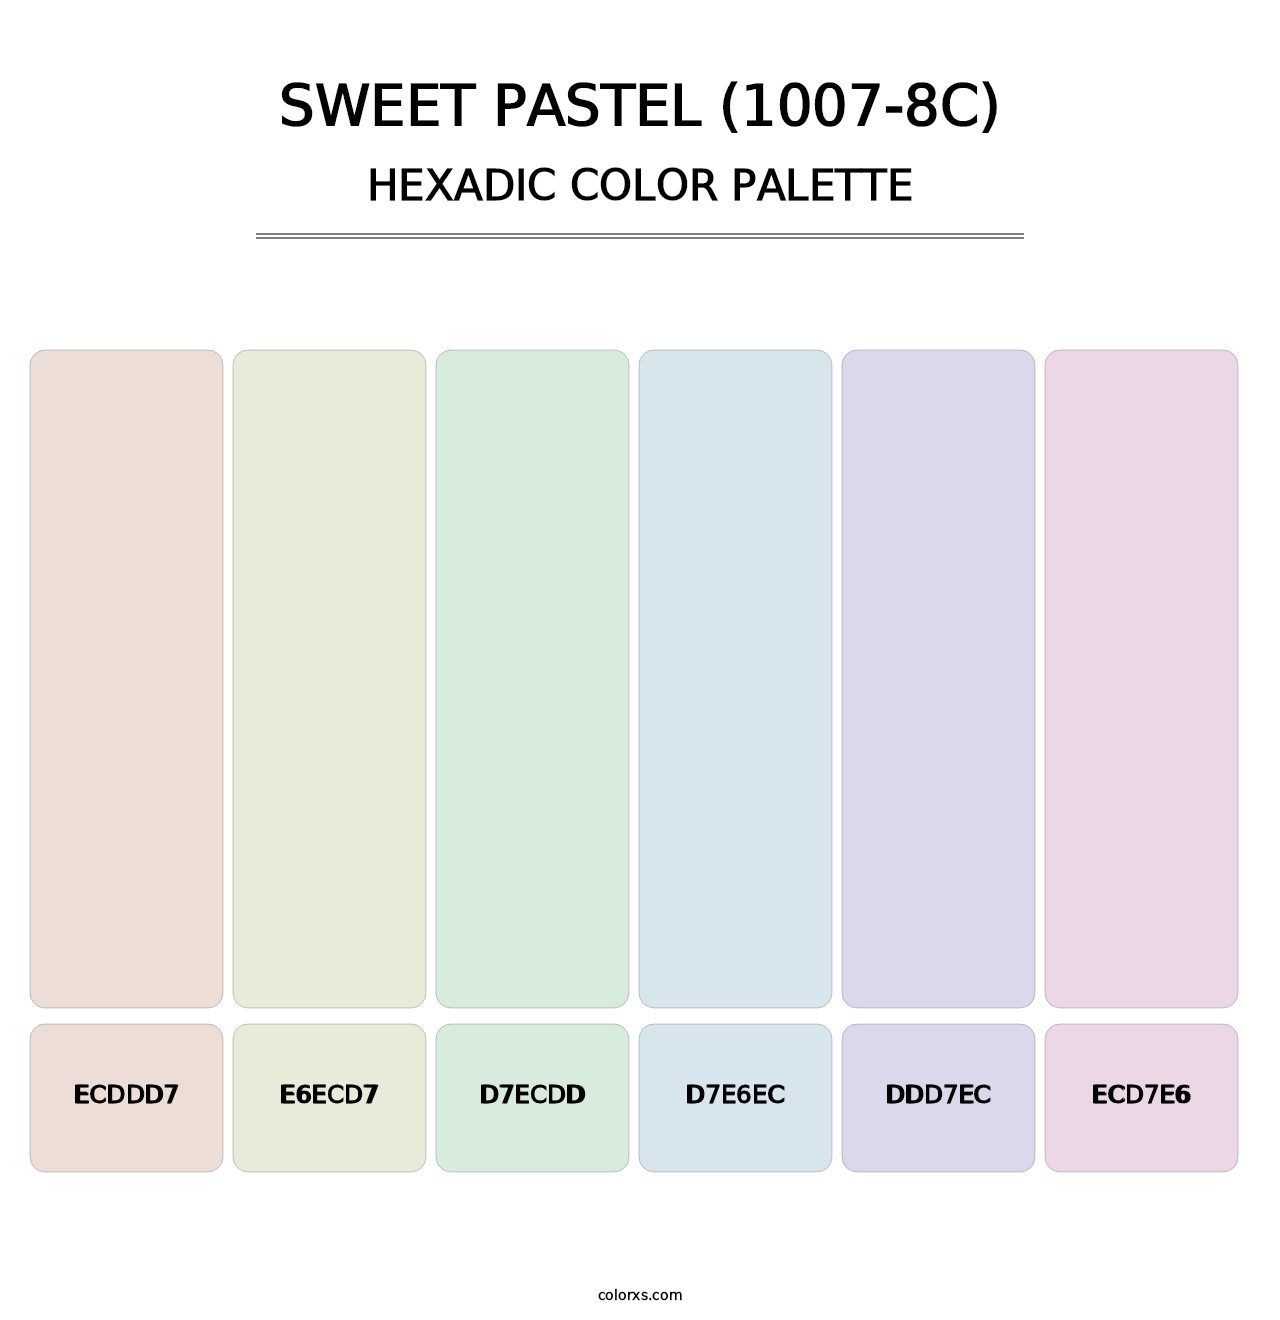 Sweet Pastel (1007-8C) - Hexadic Color Palette